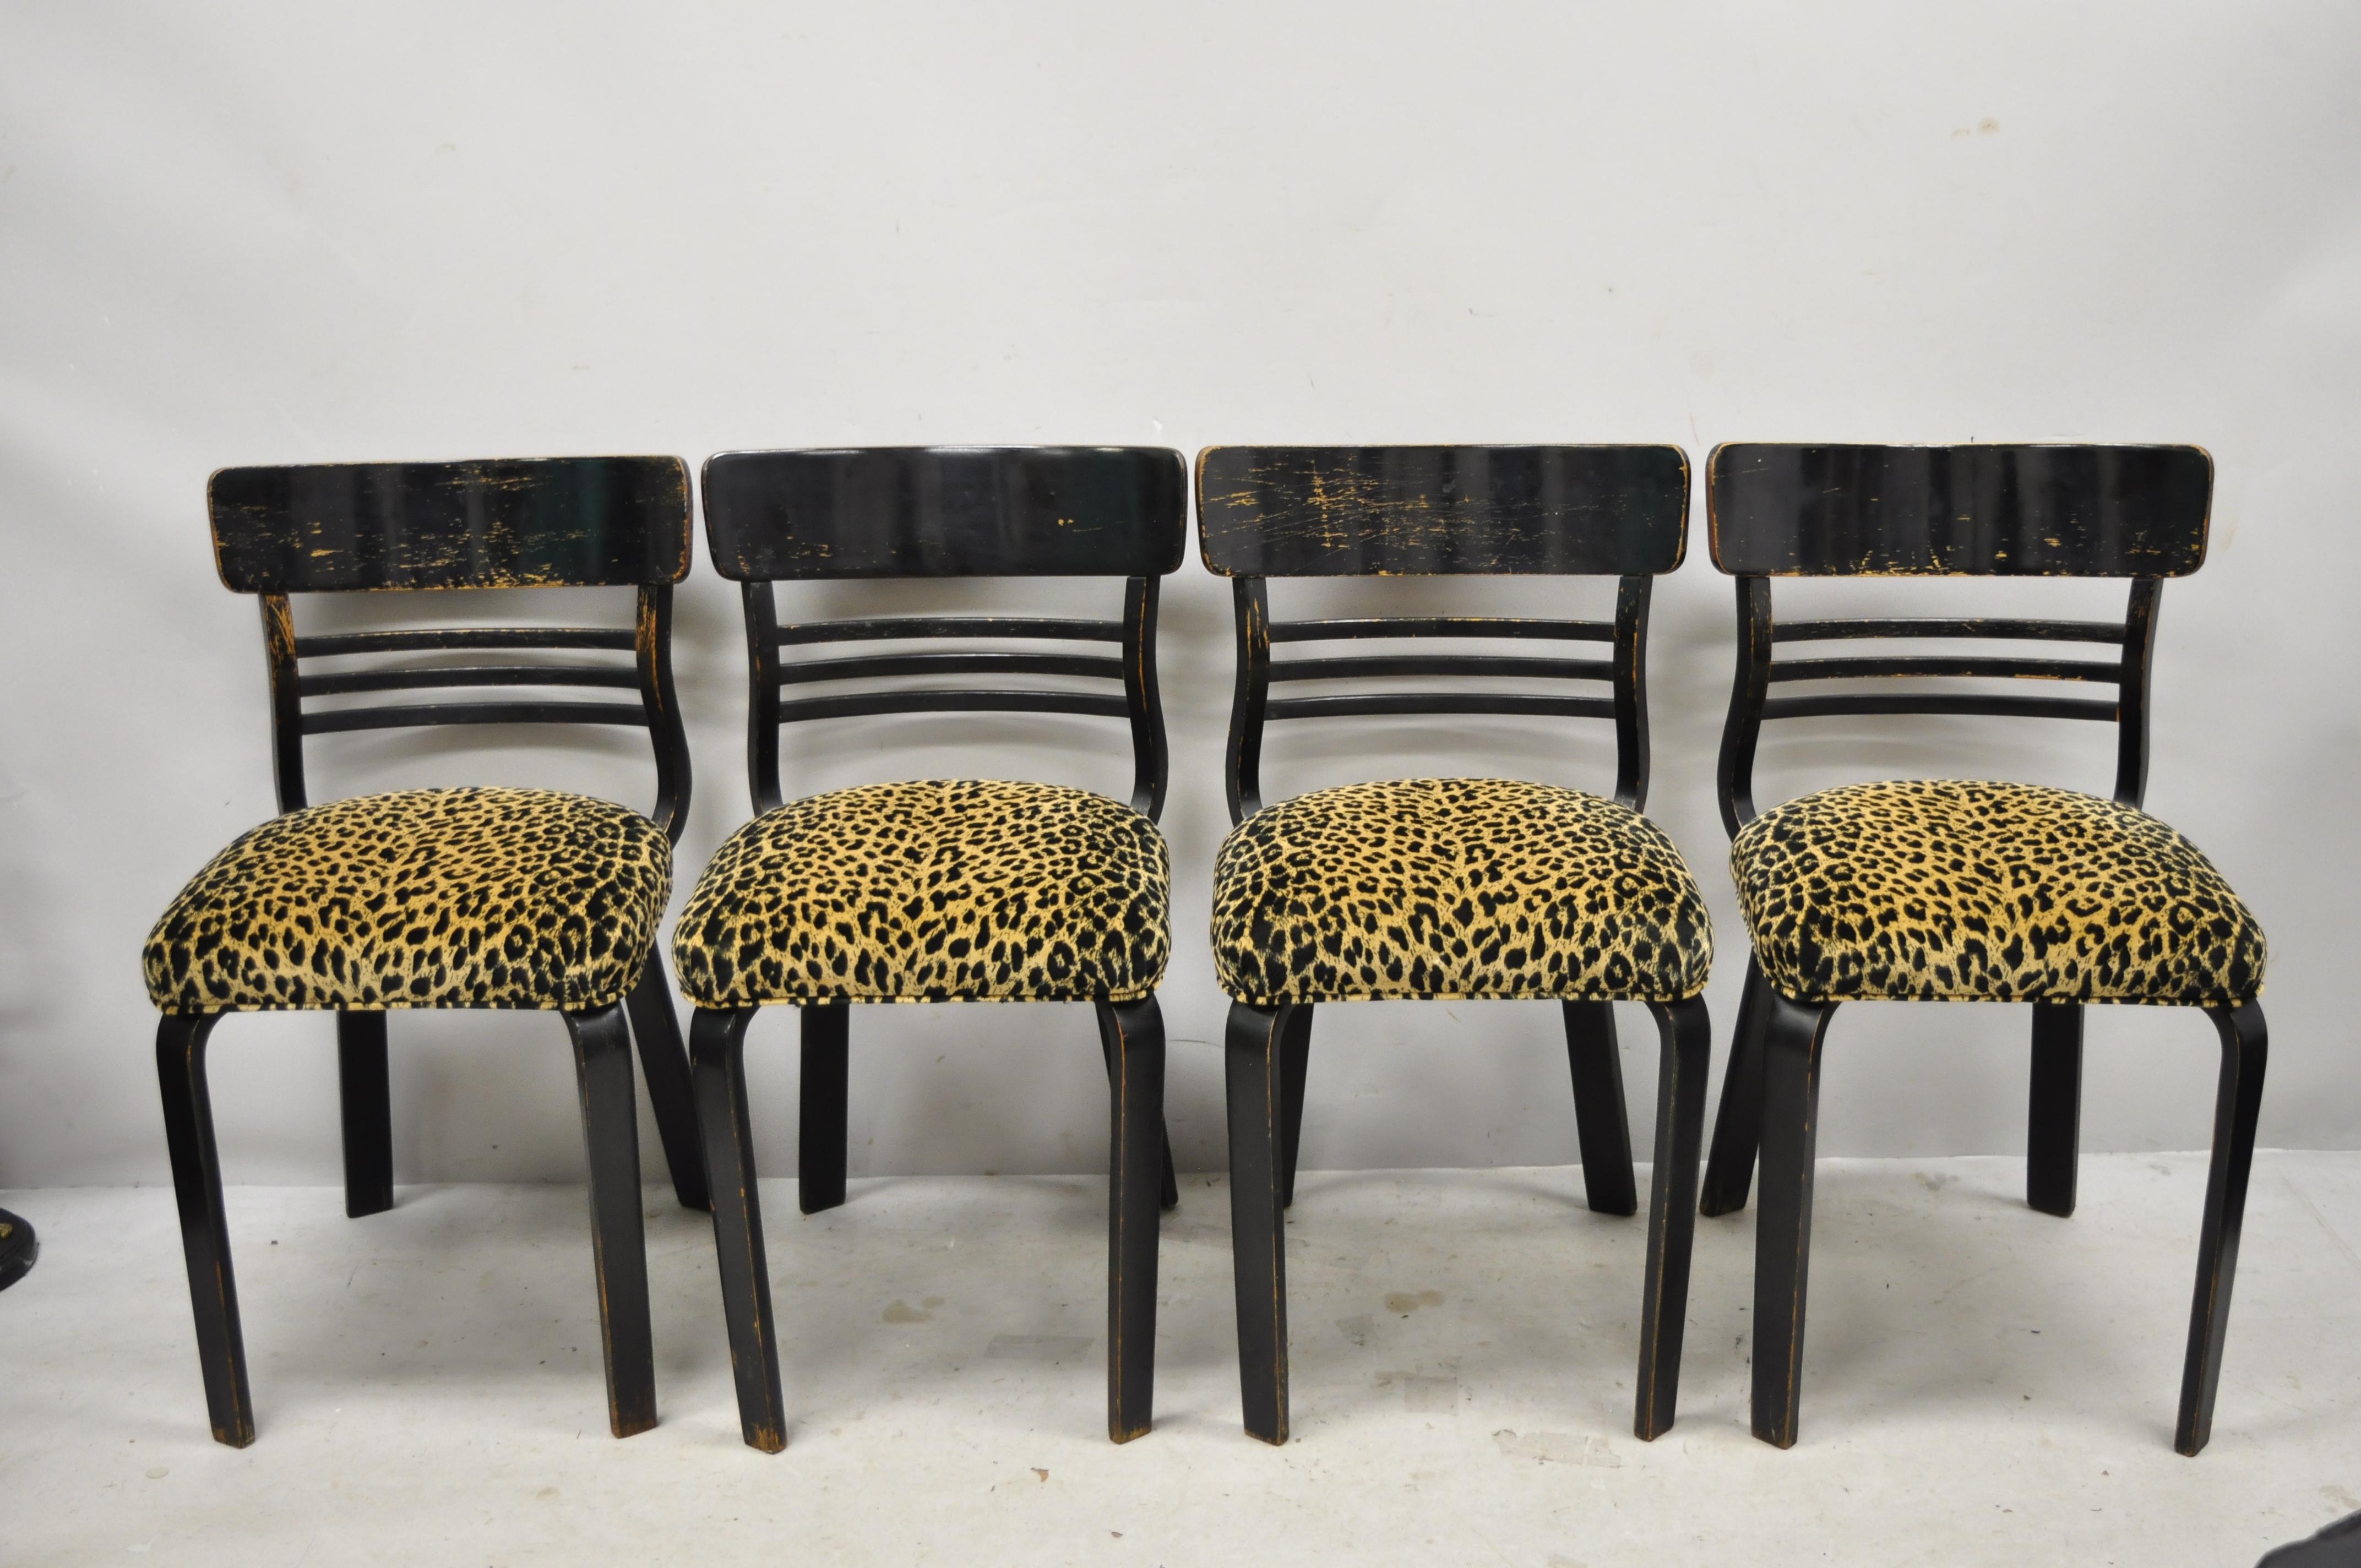 Ensemble de salle à manger Thonet en bois courbé noir vieilli - table et 4 chaises - 5 pièces. L'article comprend (1) une feuille de 12